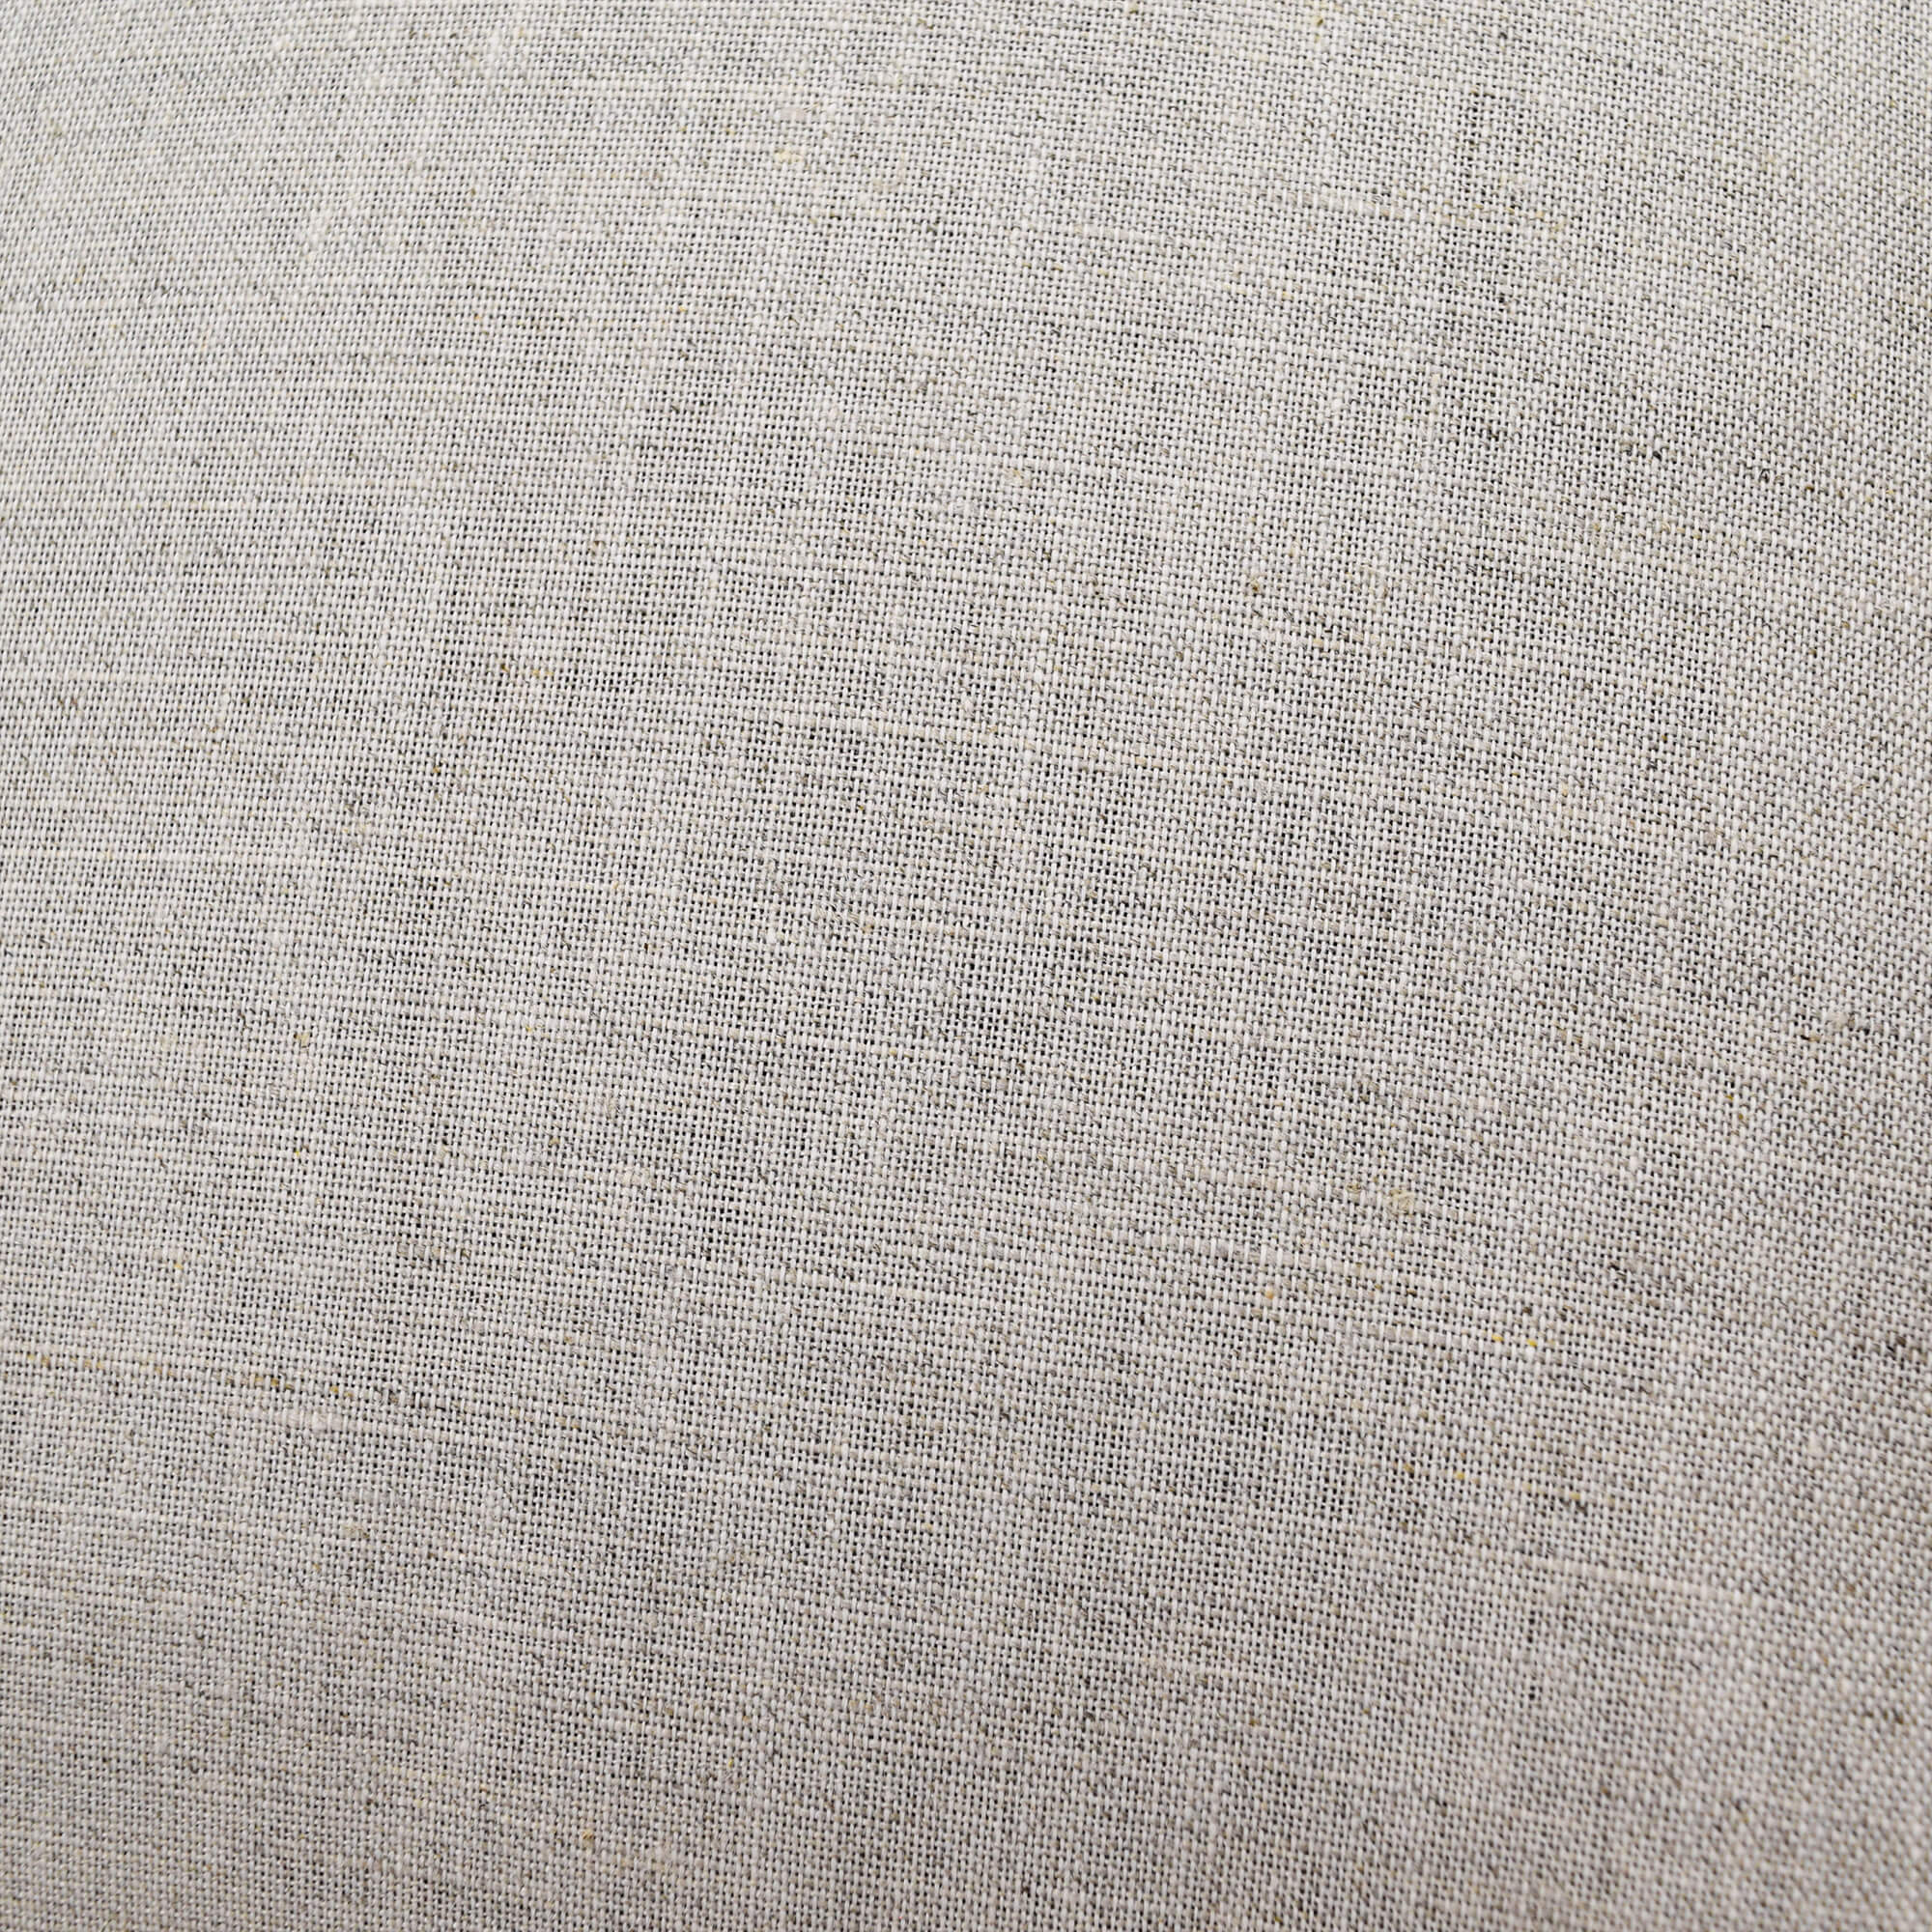 Buckwheat Hull Pillow Deluxe - PineTales - Fabric Closeup